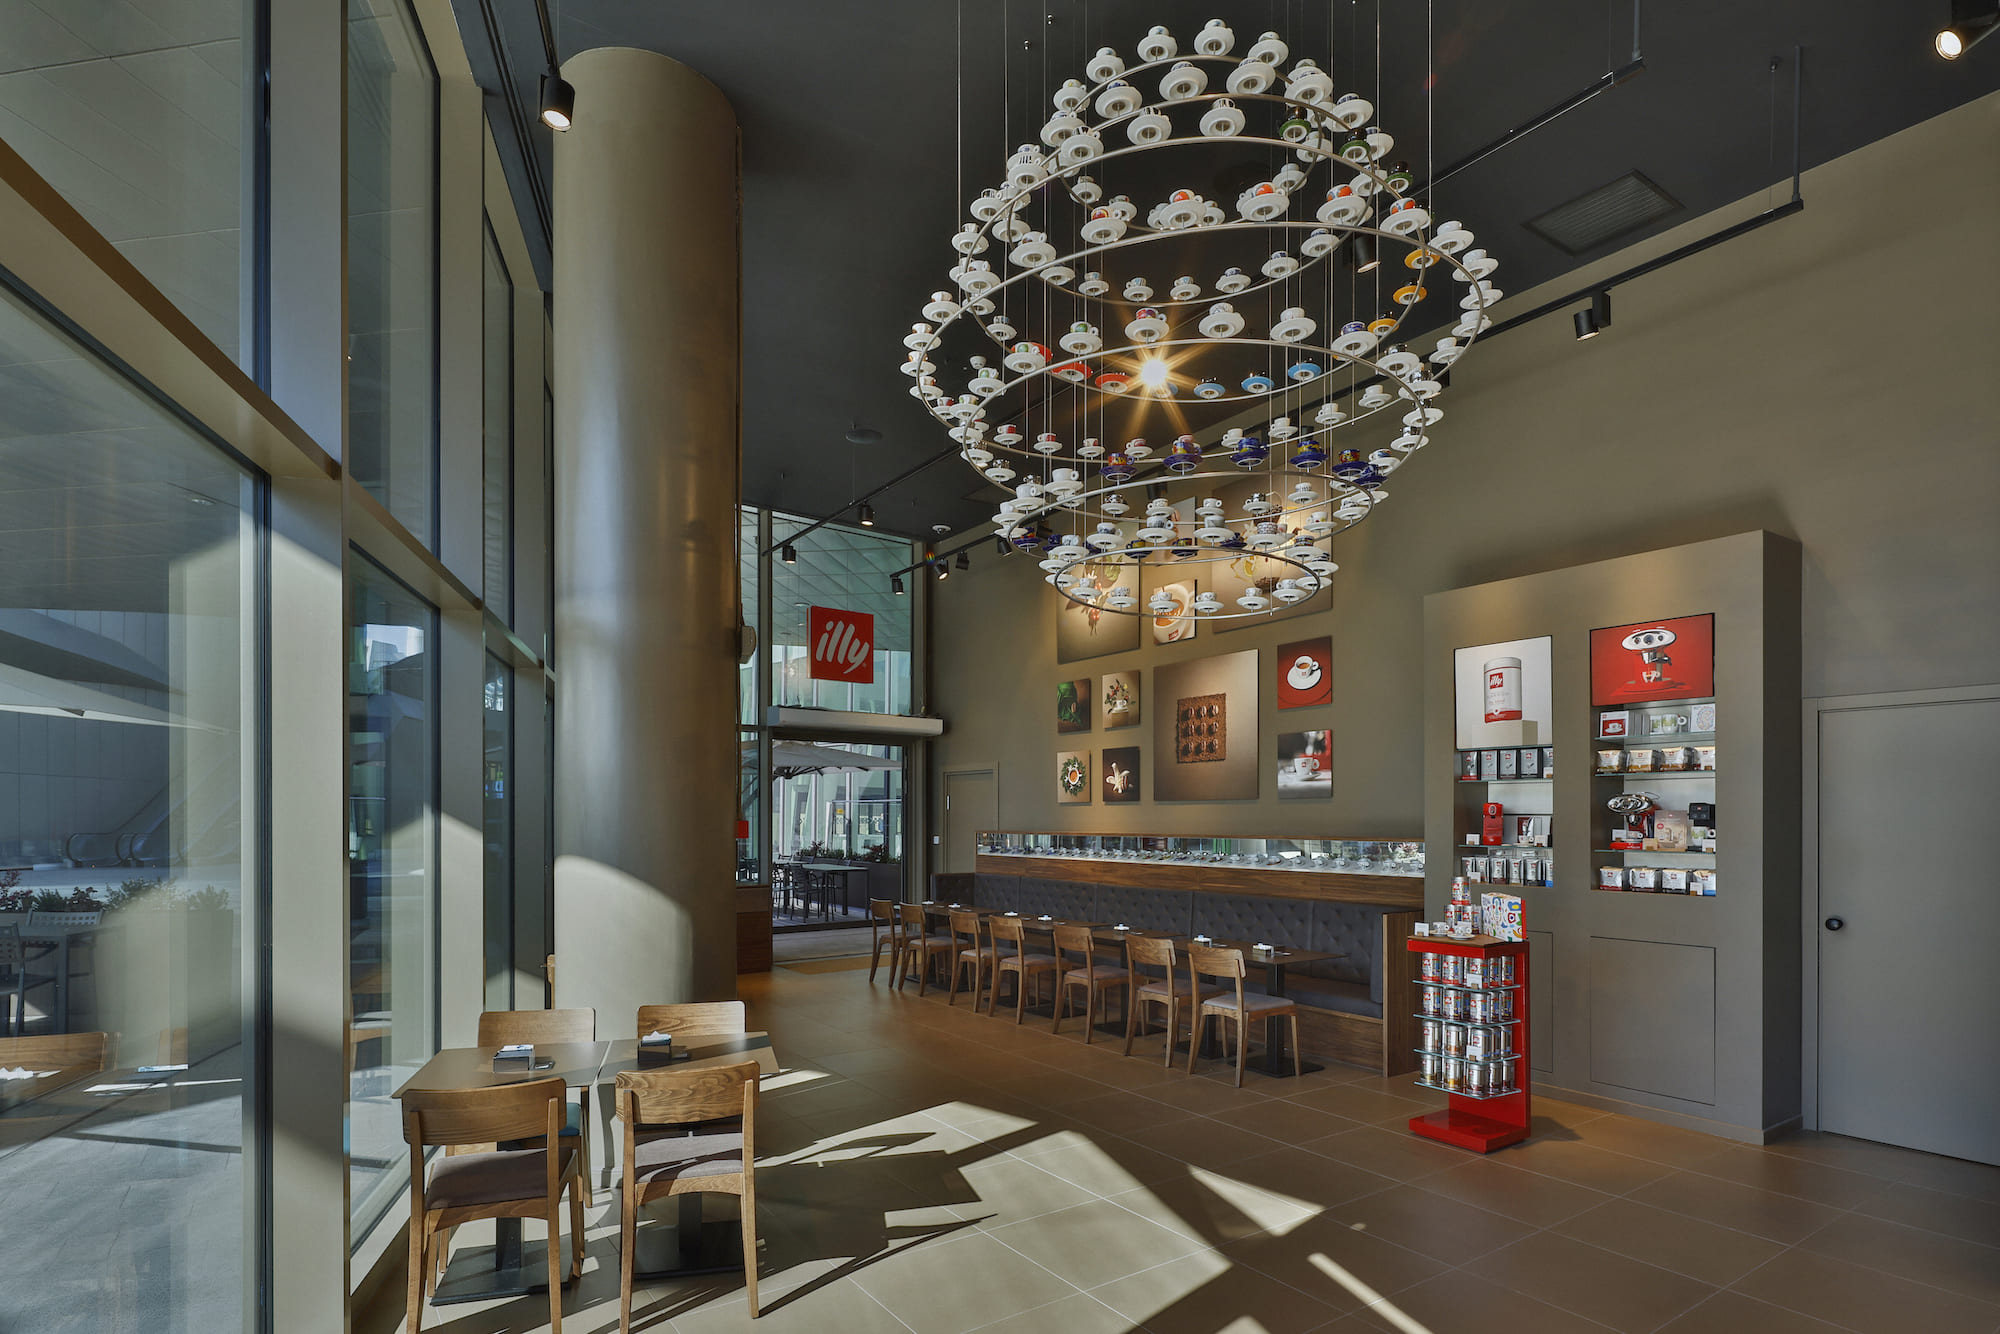 illycaffè, azienda leader nel caffè di alta qualità sostenibile, annuncia l’apertura del suo quarto flagship store milanese a CityLife con affaccio su Piazza Tre Torri,